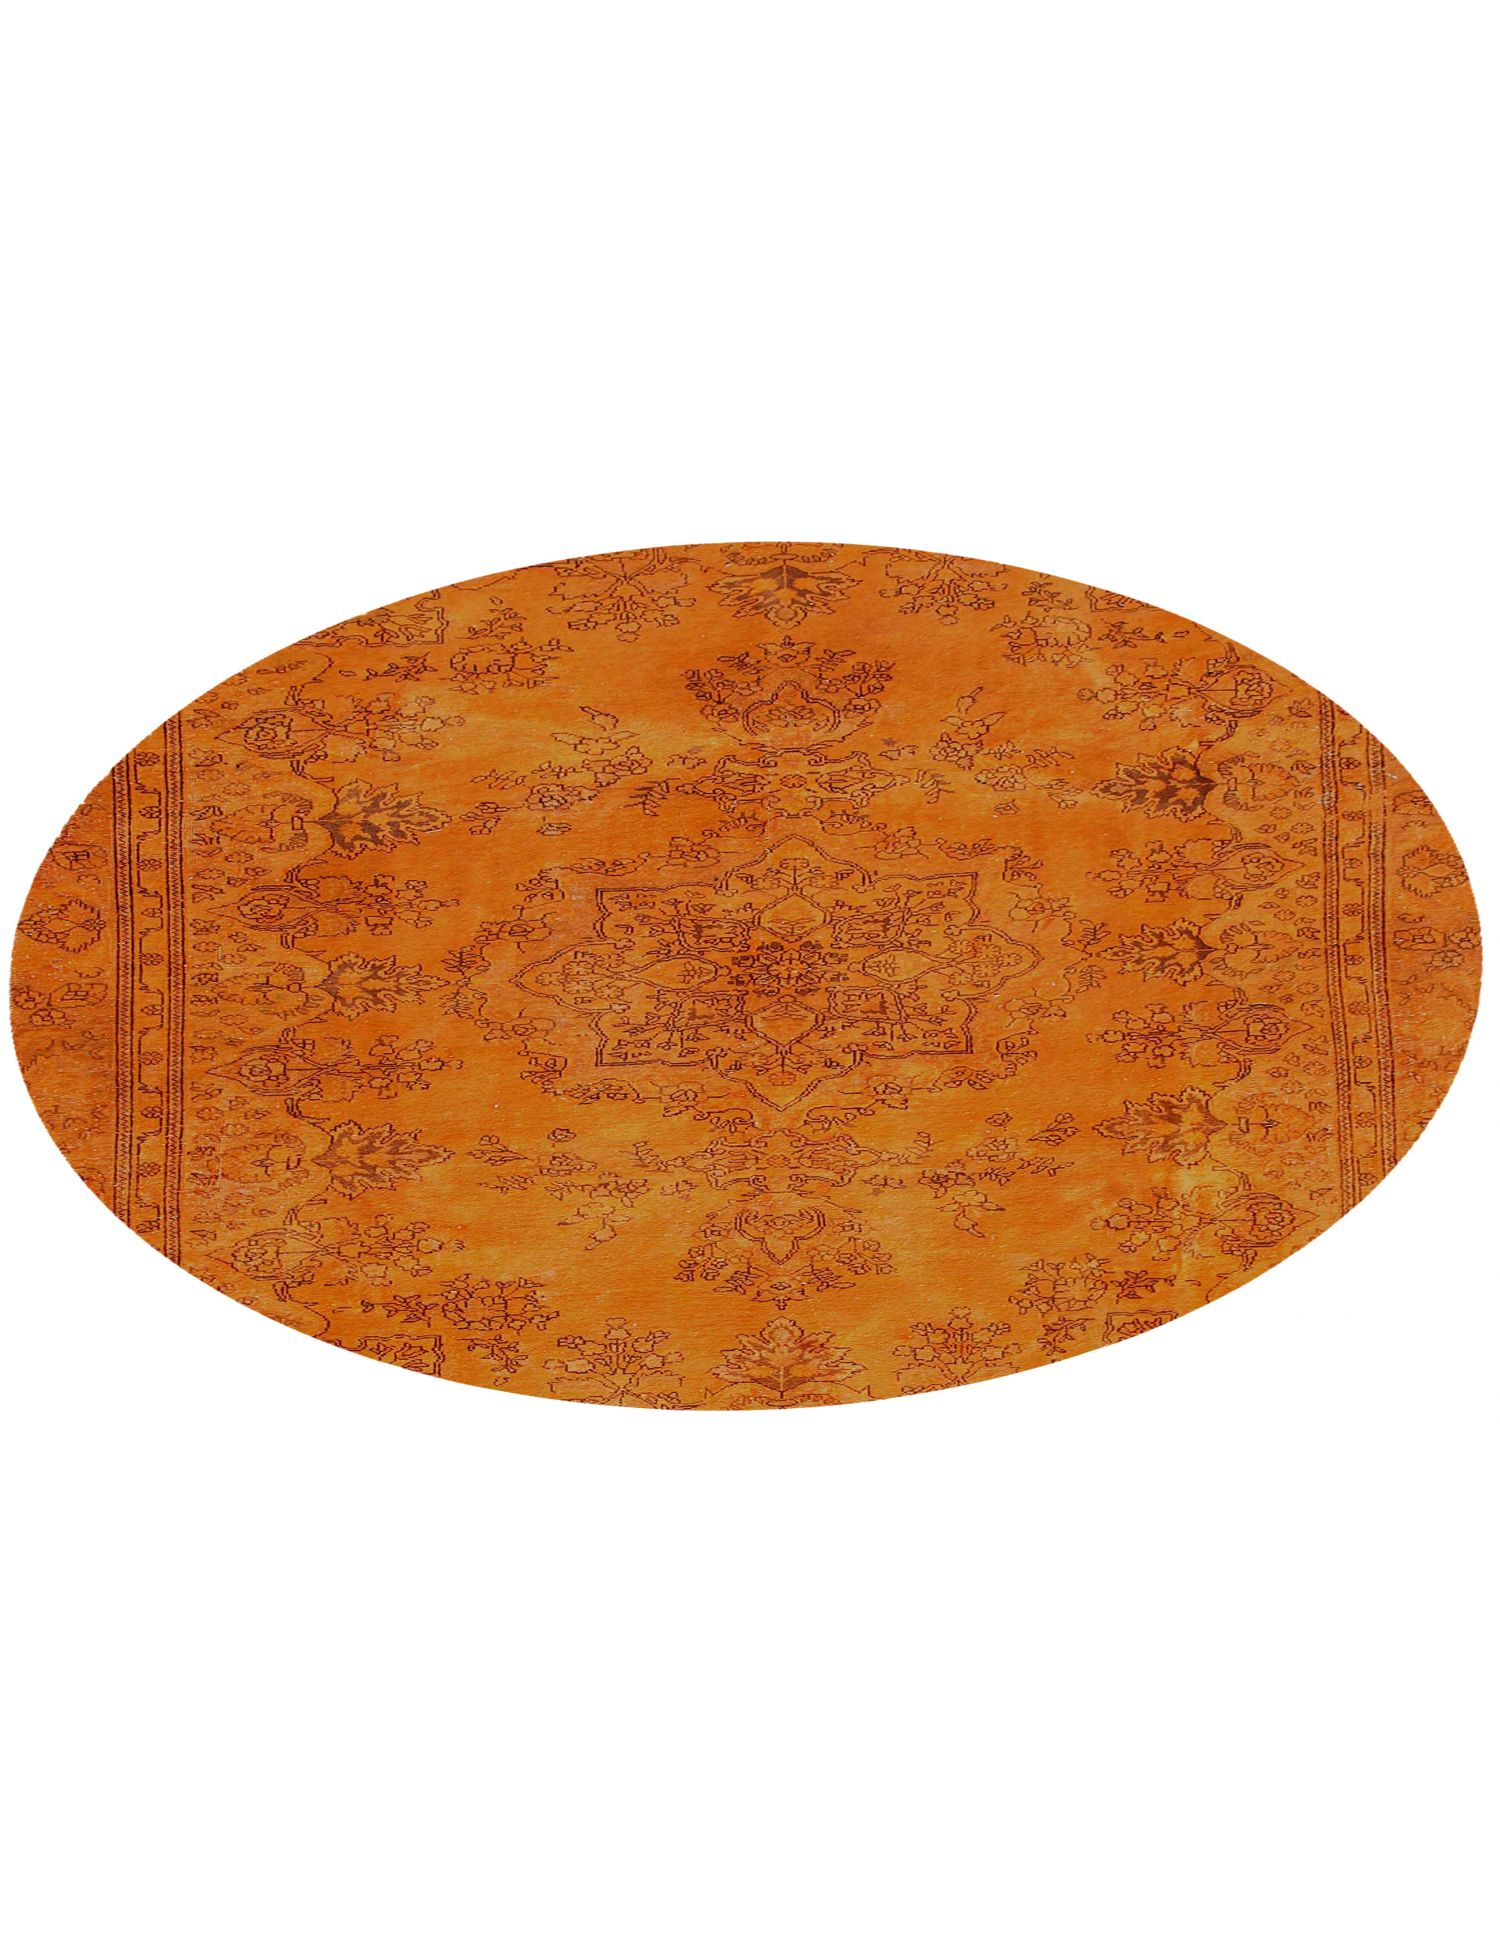 Rund  Vintage Teppich  orange <br/>239 x 239 cm